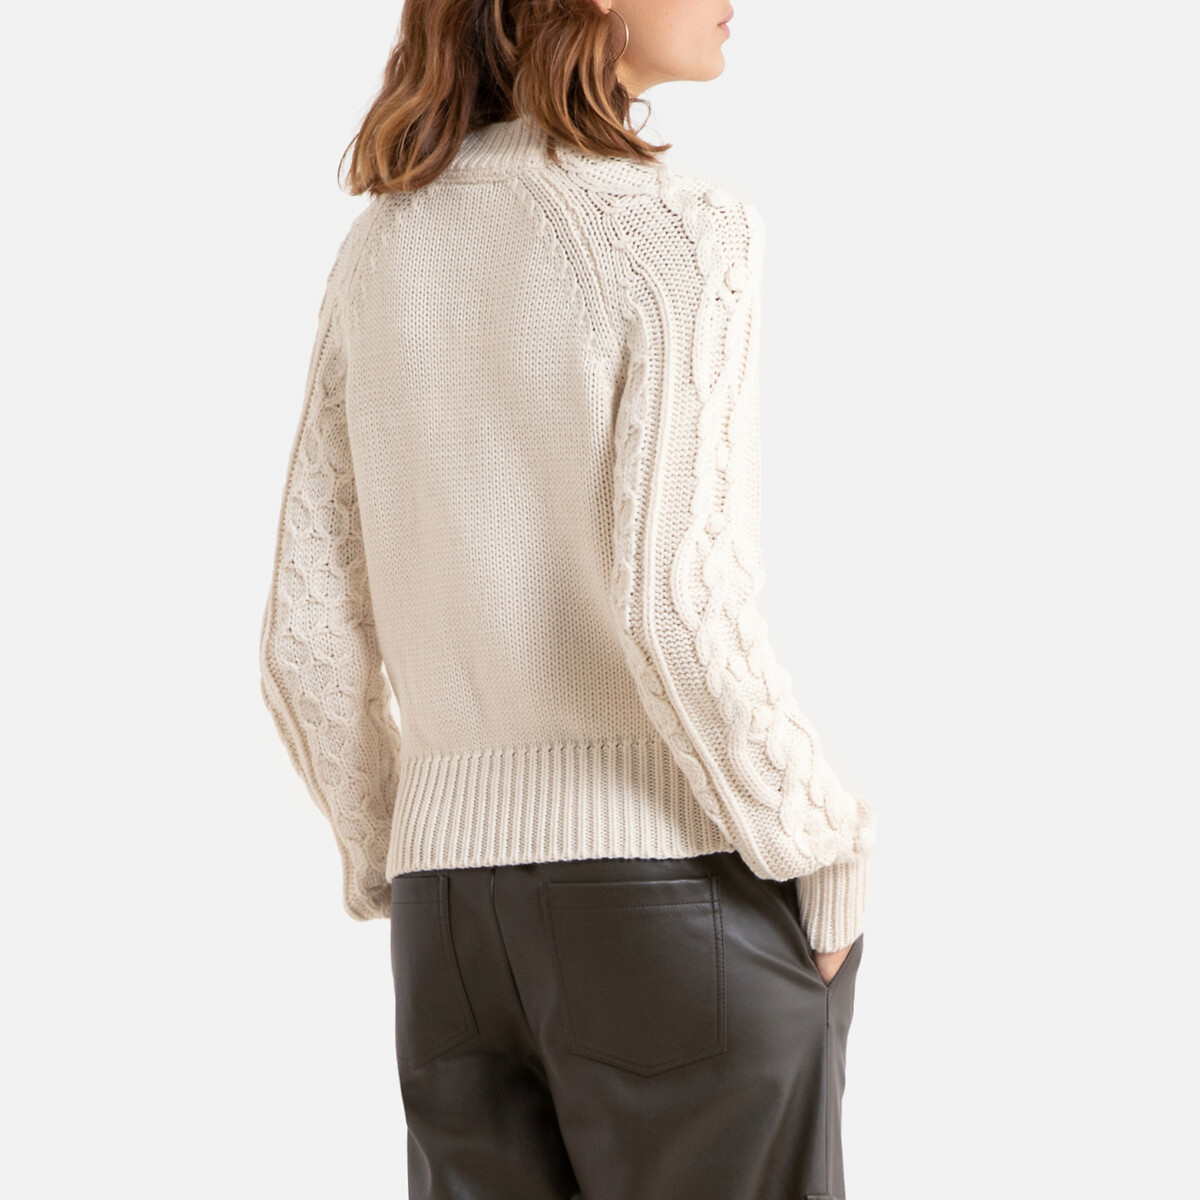 Пуловер La Redoute Из плотного трикотажа круглый вырез S белый, размер S - фото 4